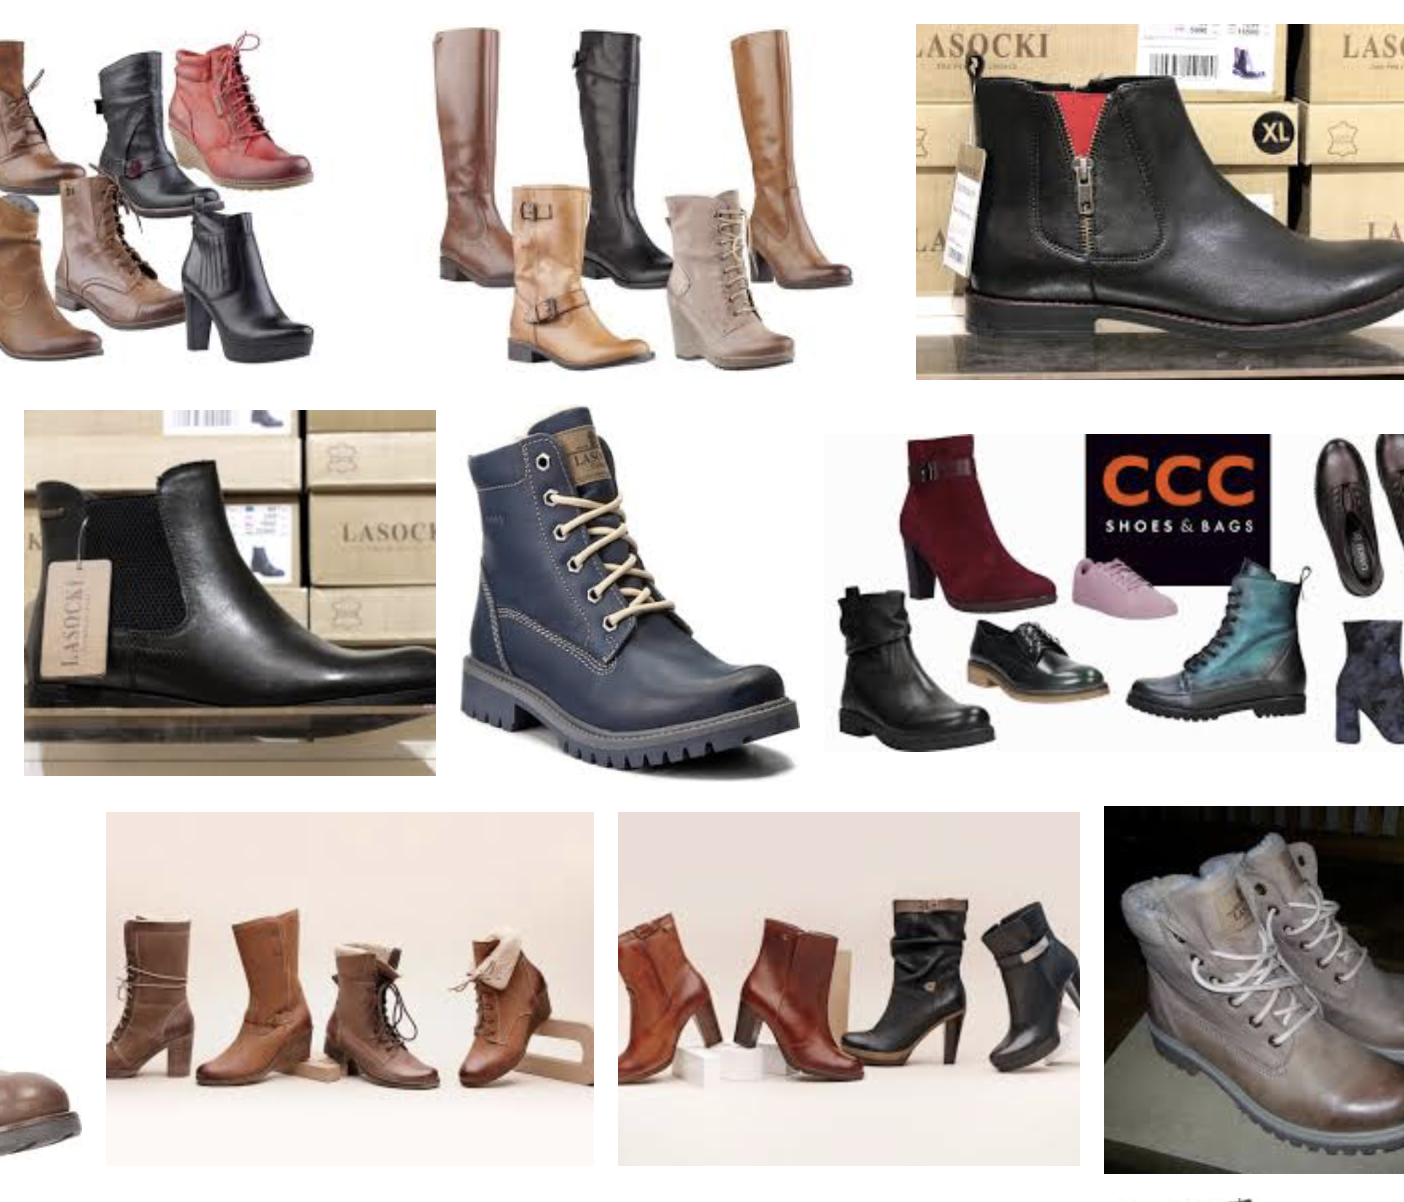 ccc обувь lasocki | Блог Оляпки